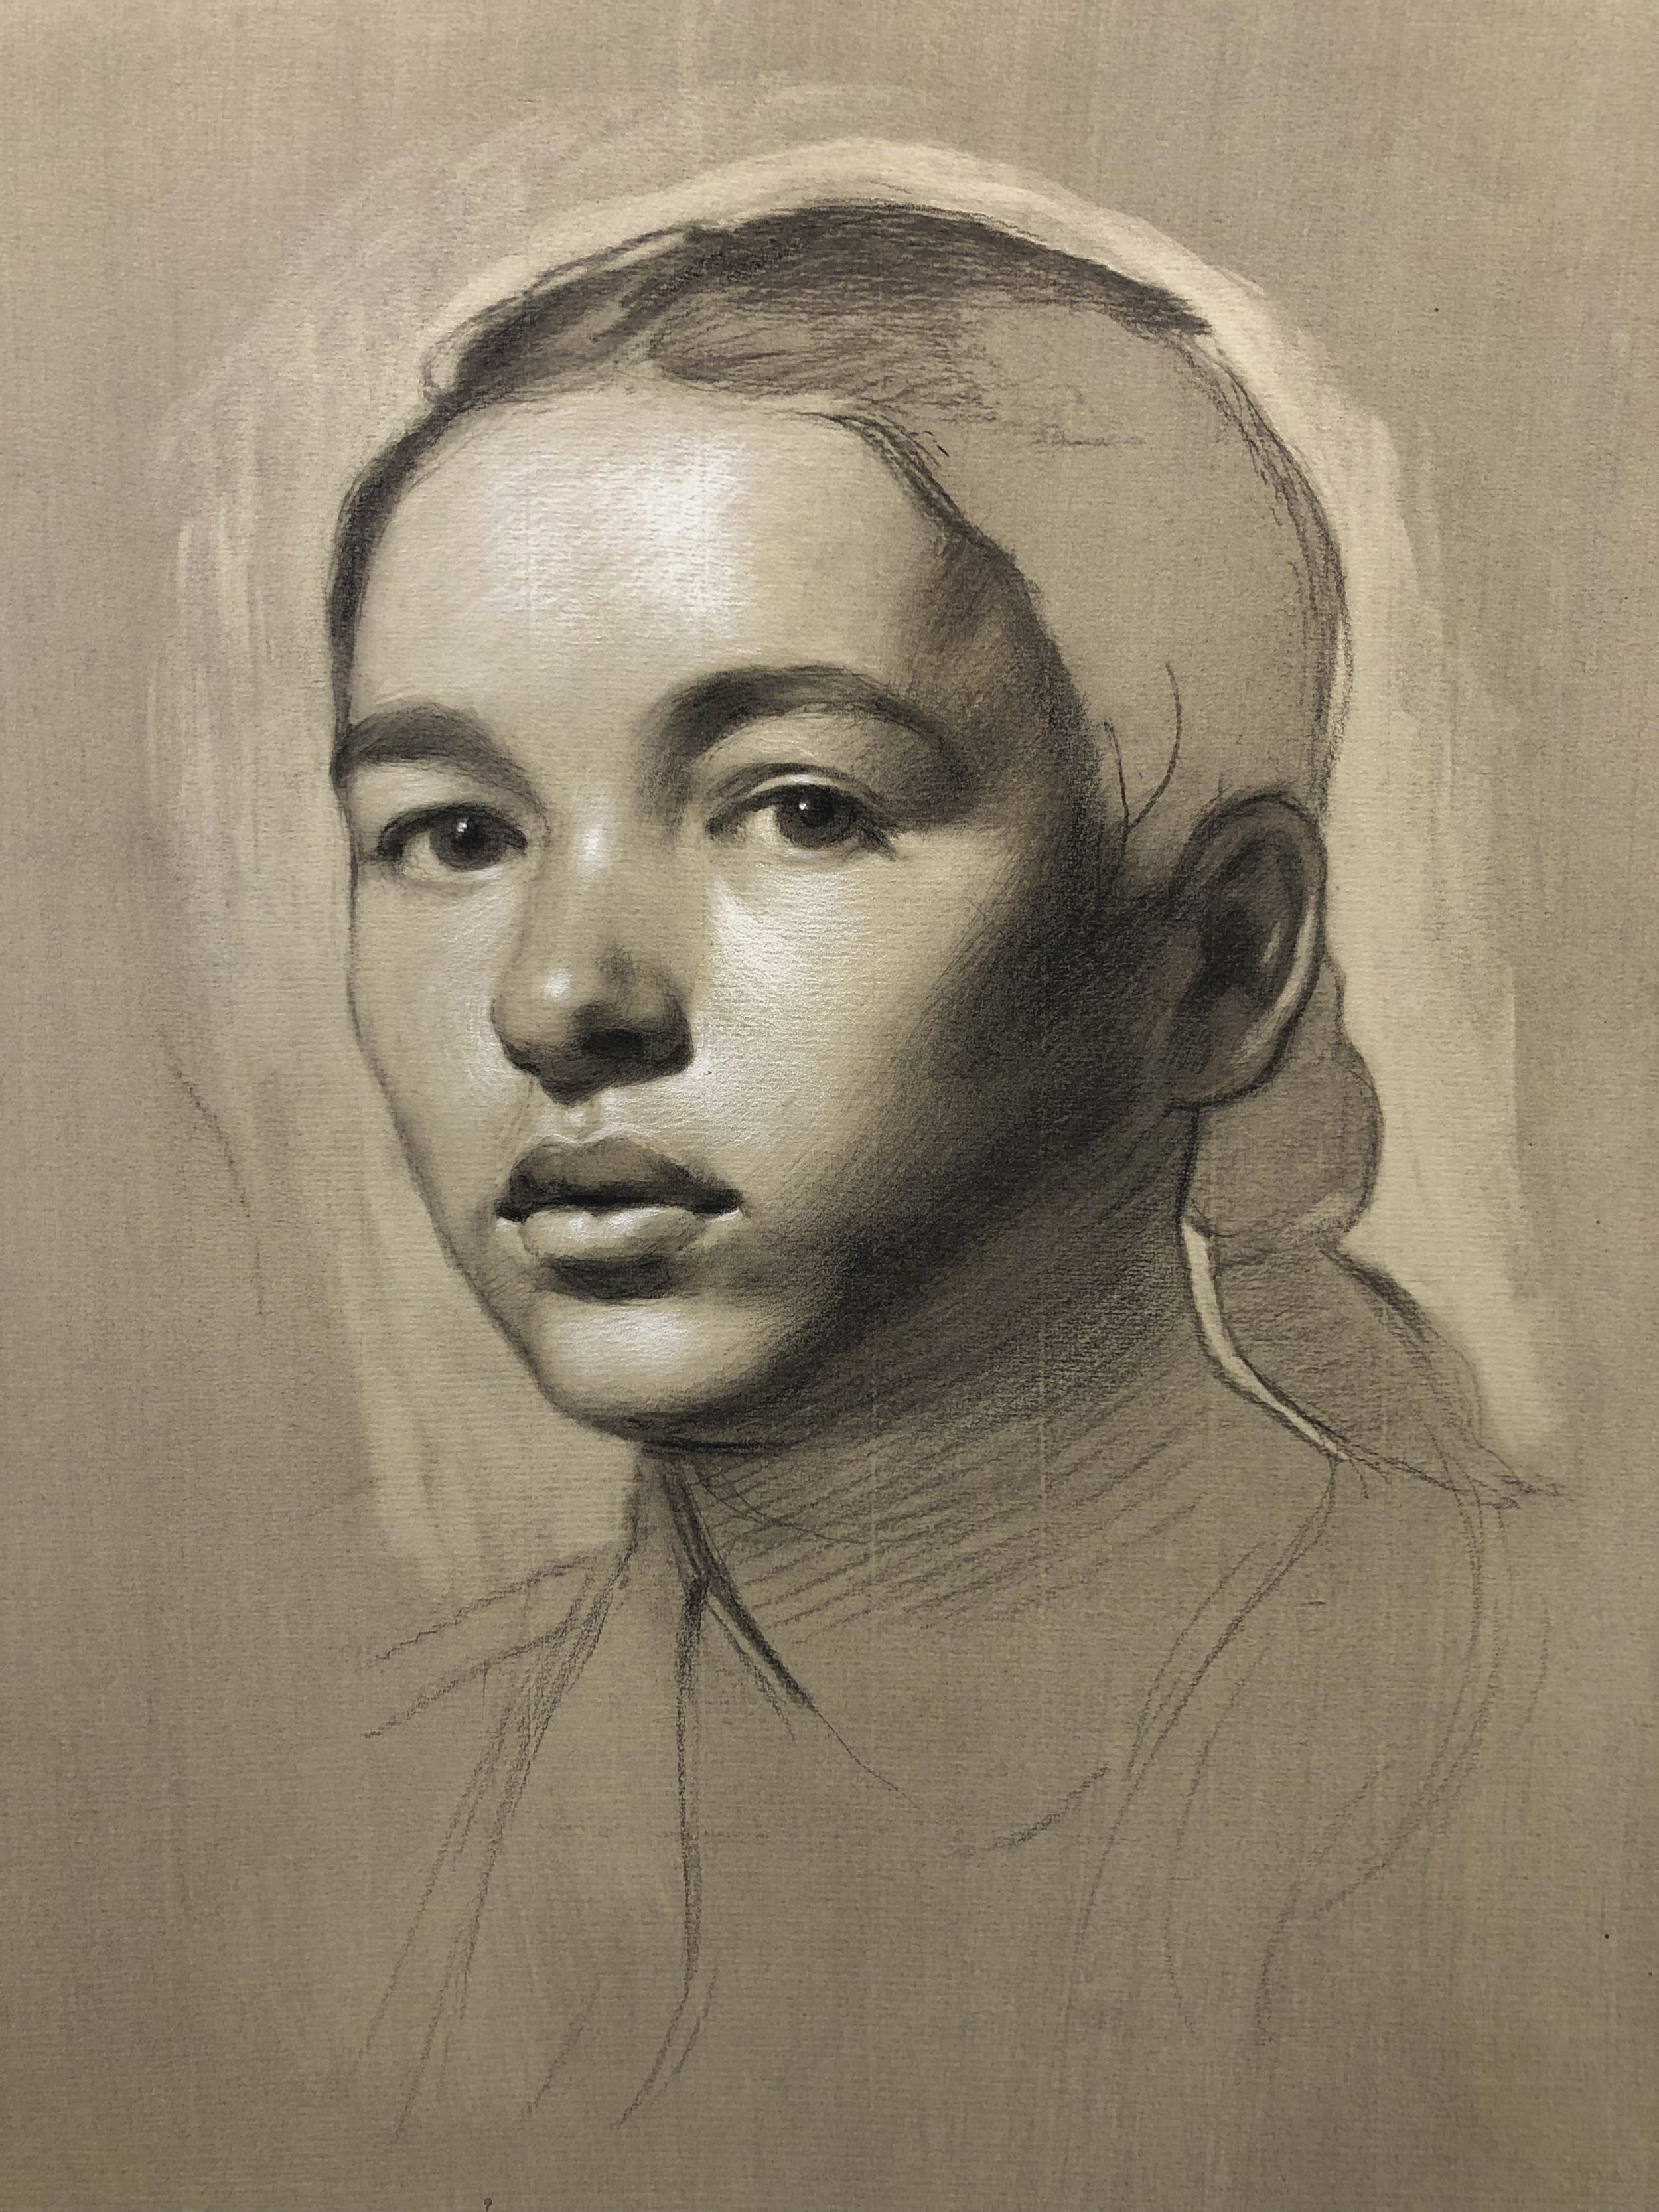 Charcoal Portraits - Art Materials and Techniques